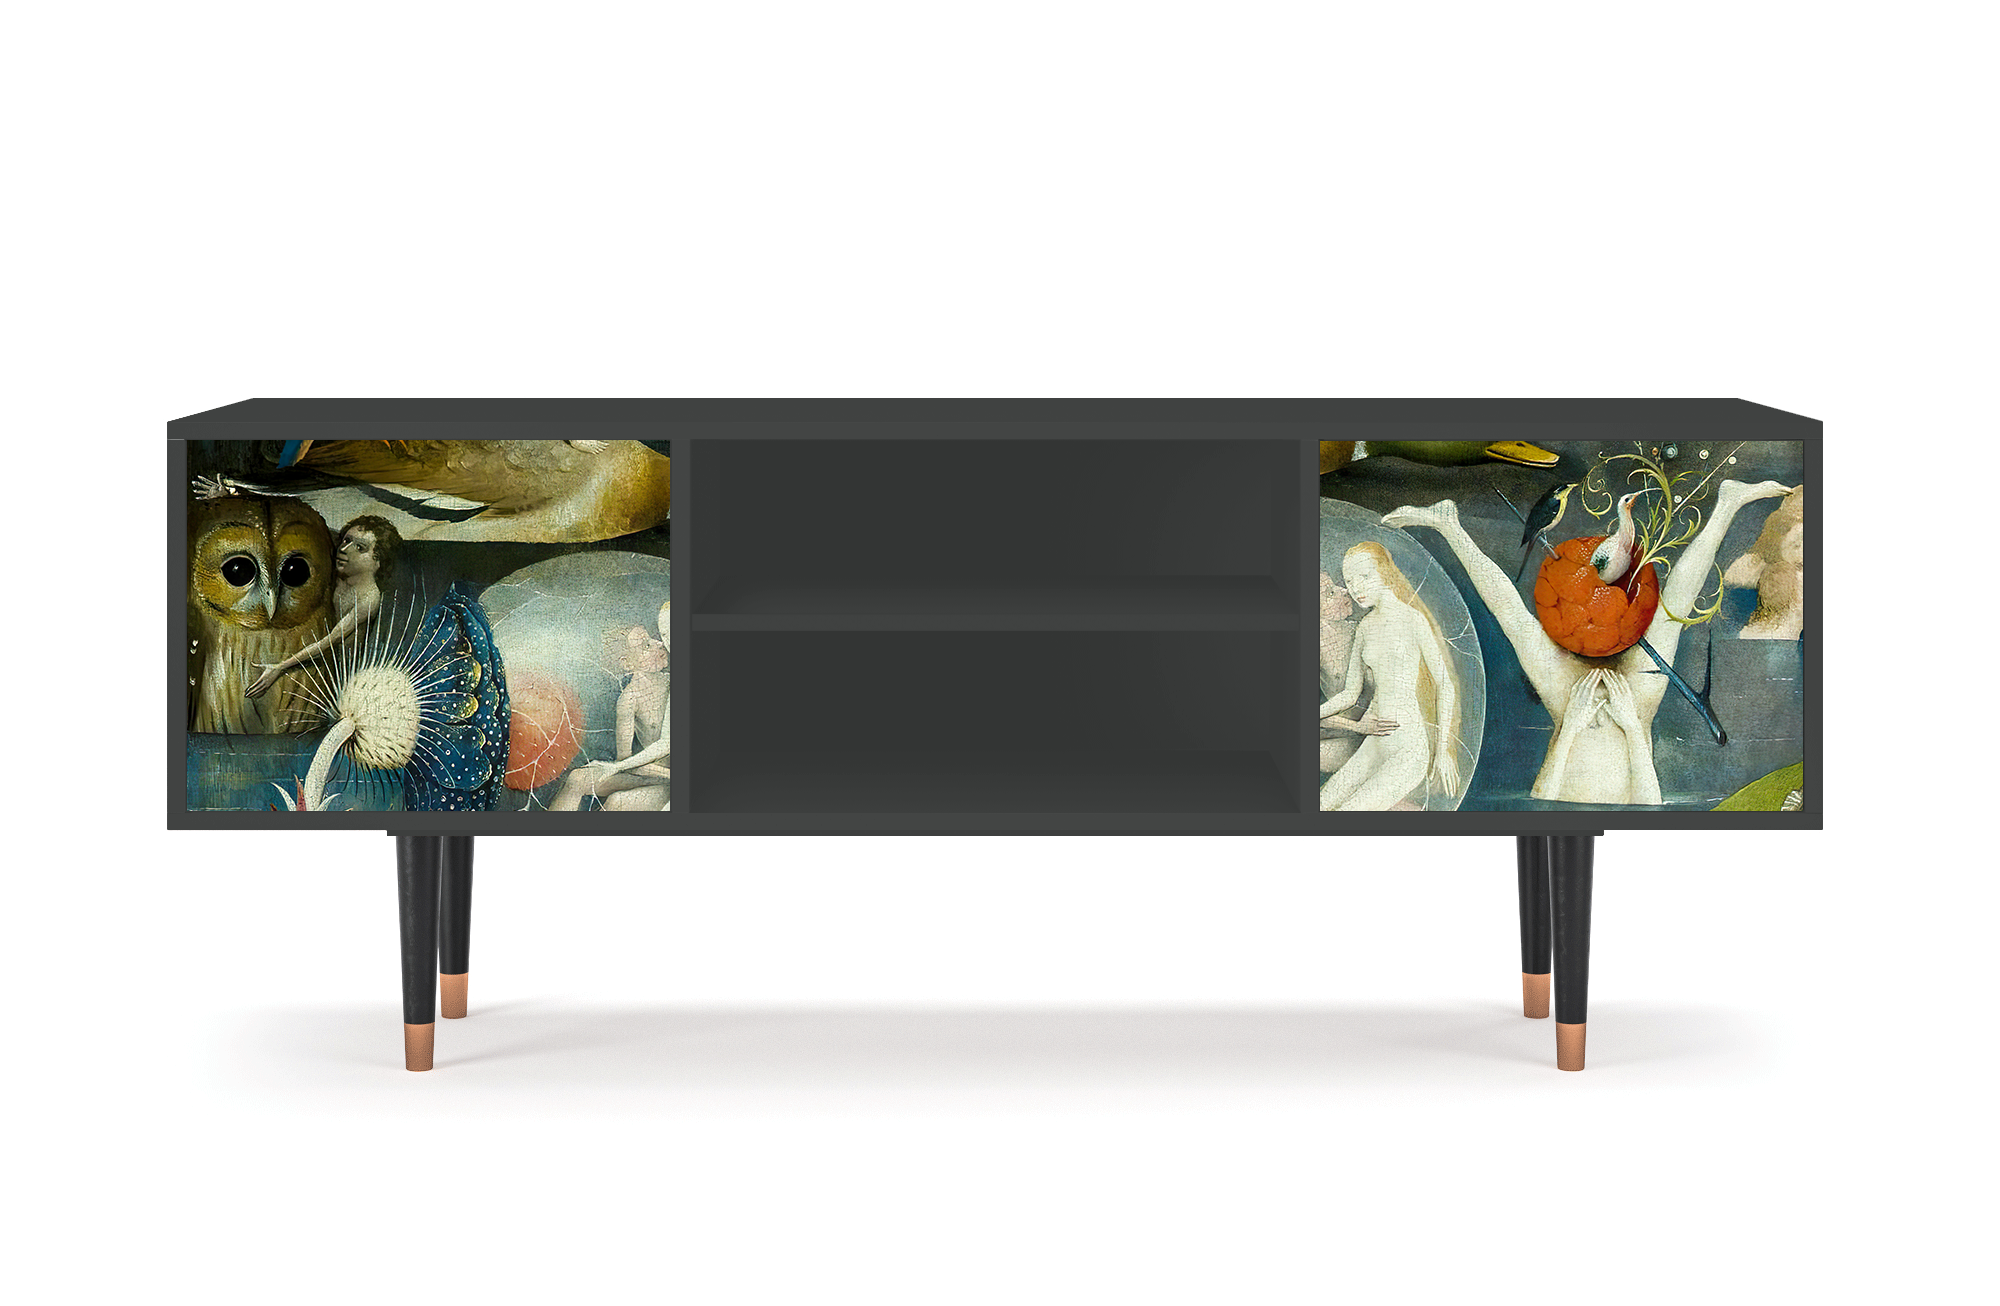 ТВ-Тумба - STORYZ - T2 The Garden Of by Hieronymus Bosch, 170 x 69 x 48 см, Антрацит - фотография № 2